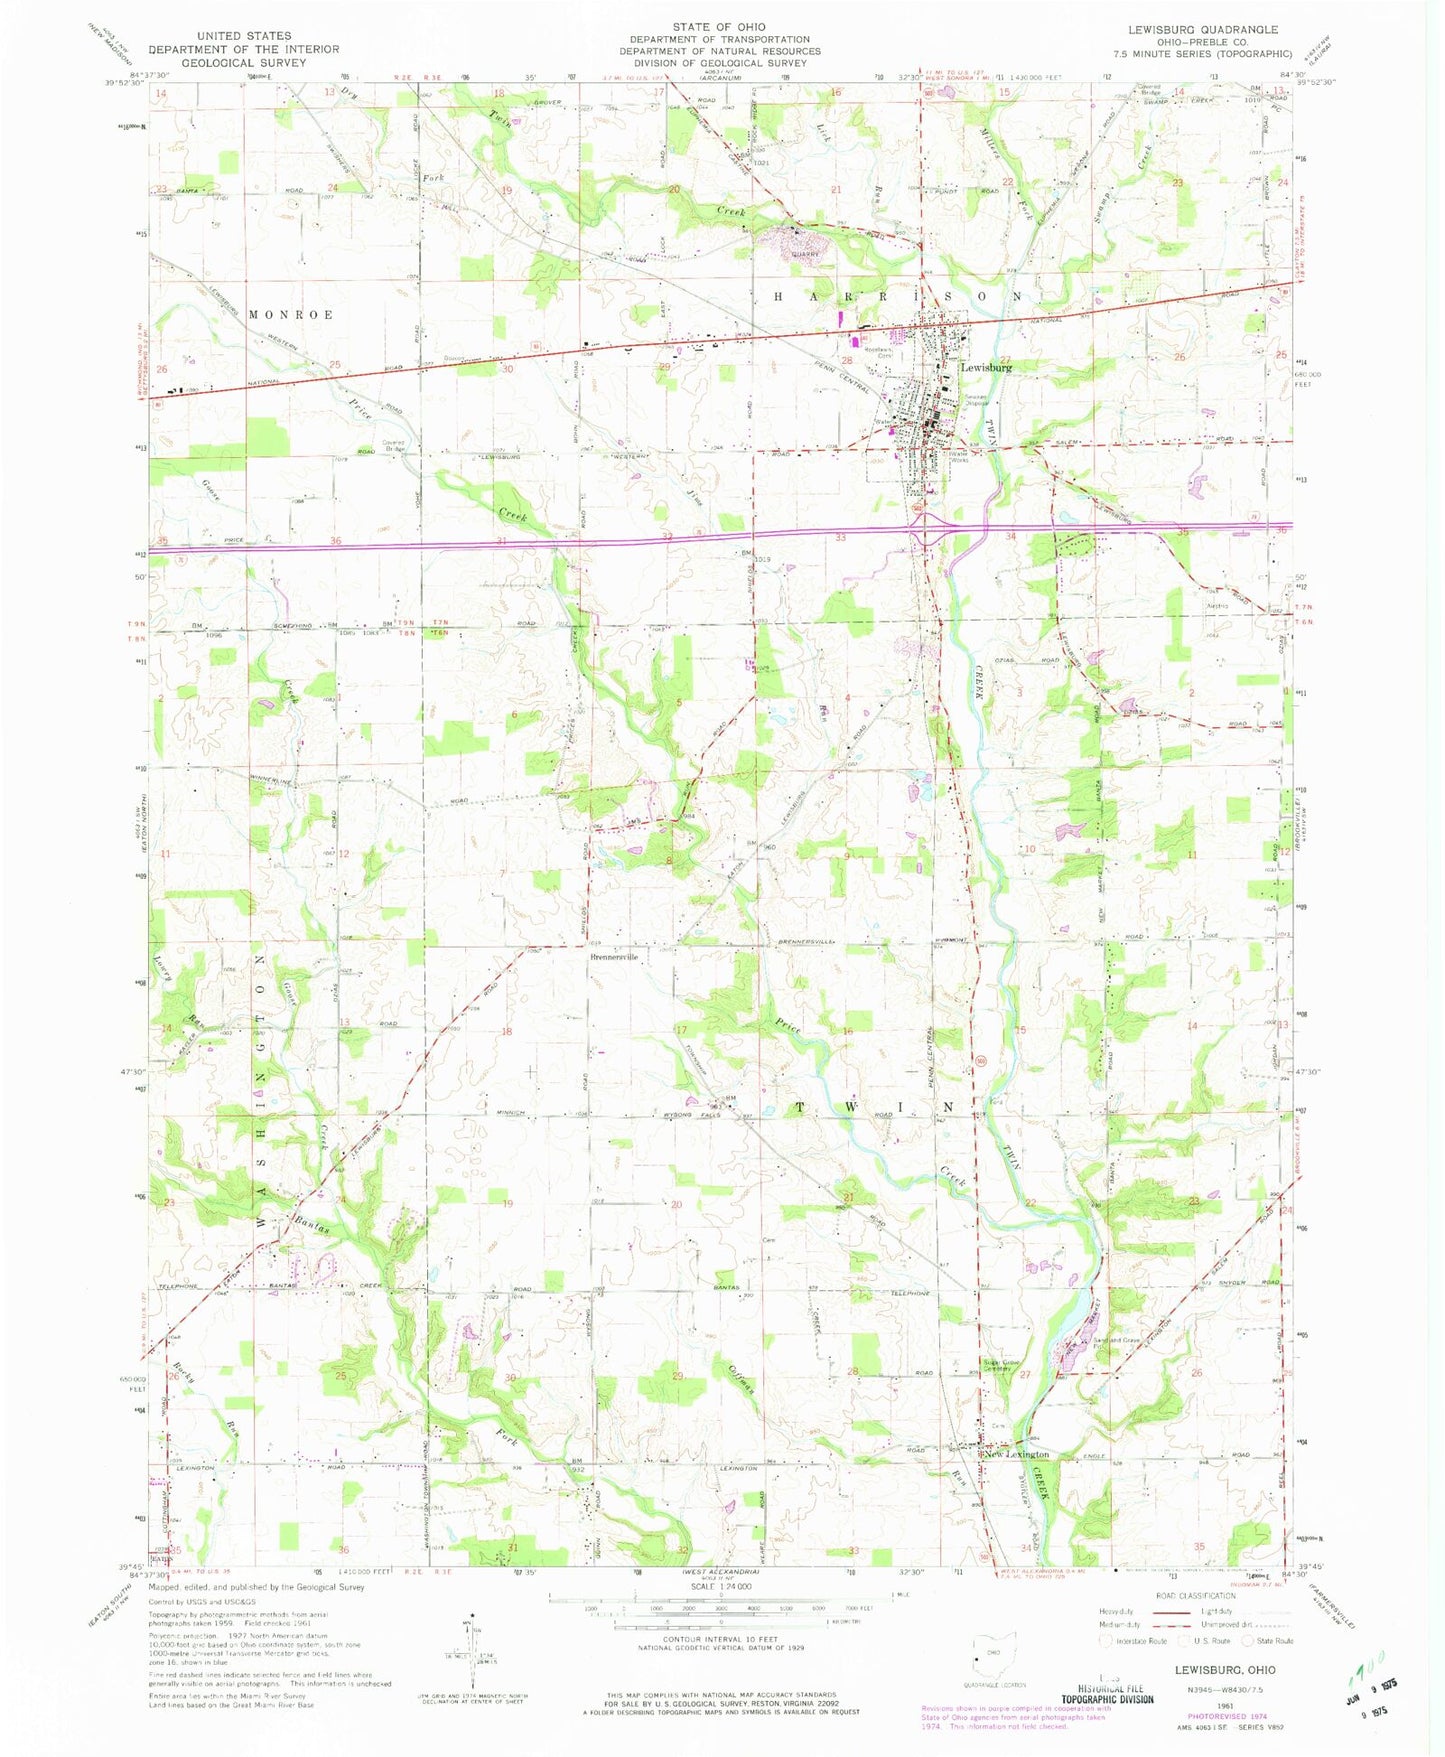 Classic USGS Lewisburg Ohio 7.5'x7.5' Topo Map Image